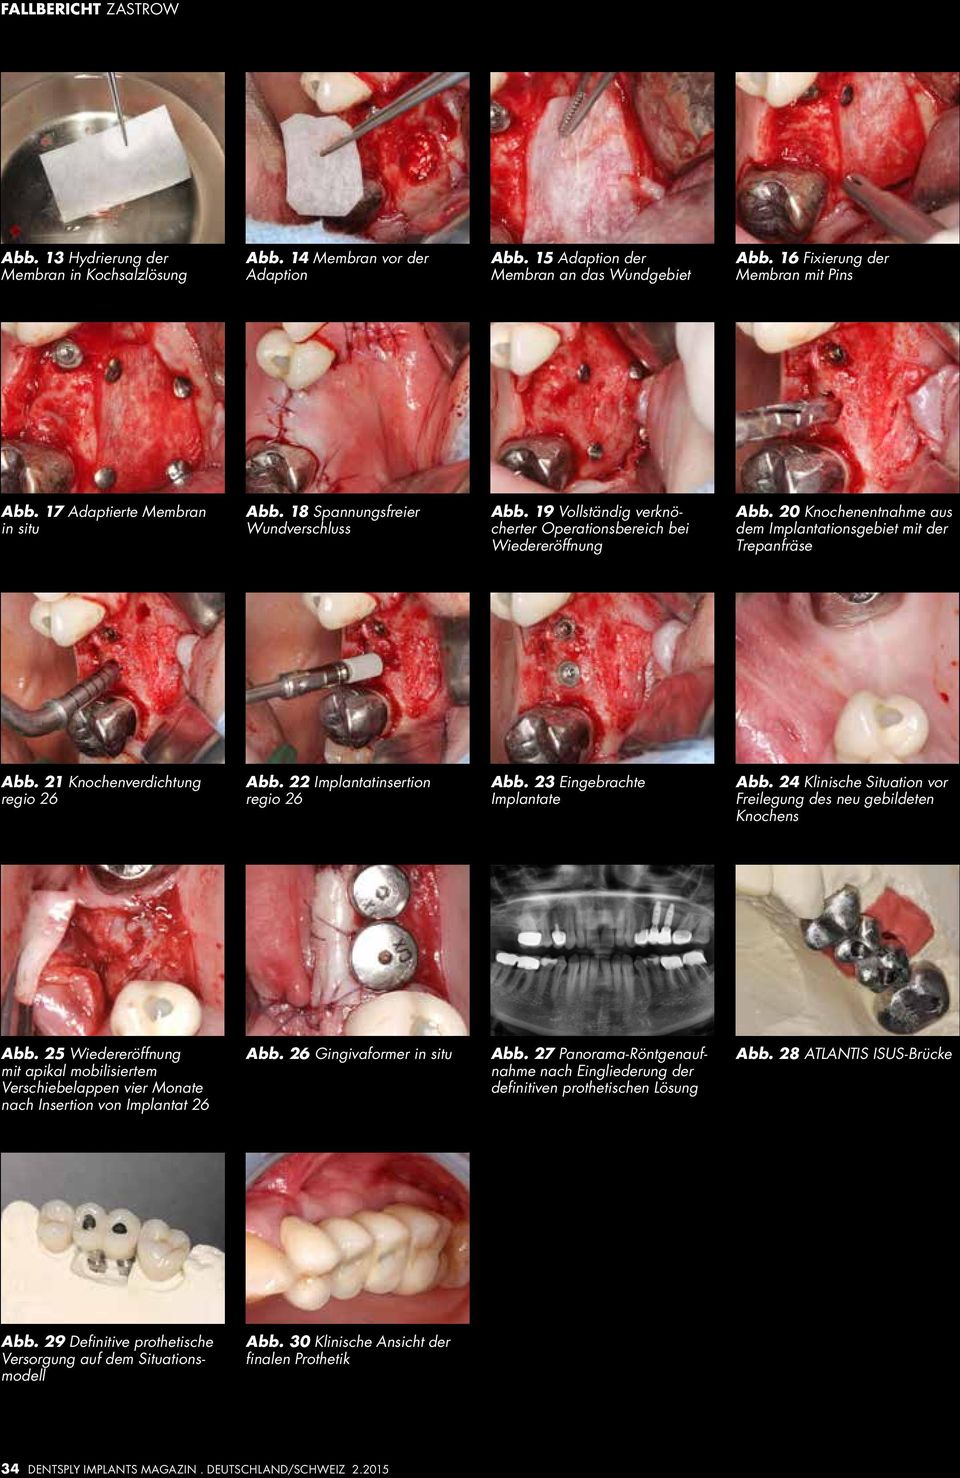 20 Knochenentnahme aus dem Implantationsgebiet mit der Trepanfräse Abb. 21 Knochenverdichtung regio 26 Abb. 22 Implantatinsertion regio 26 Abb. 23 Eingebrachte Implantate Abb.